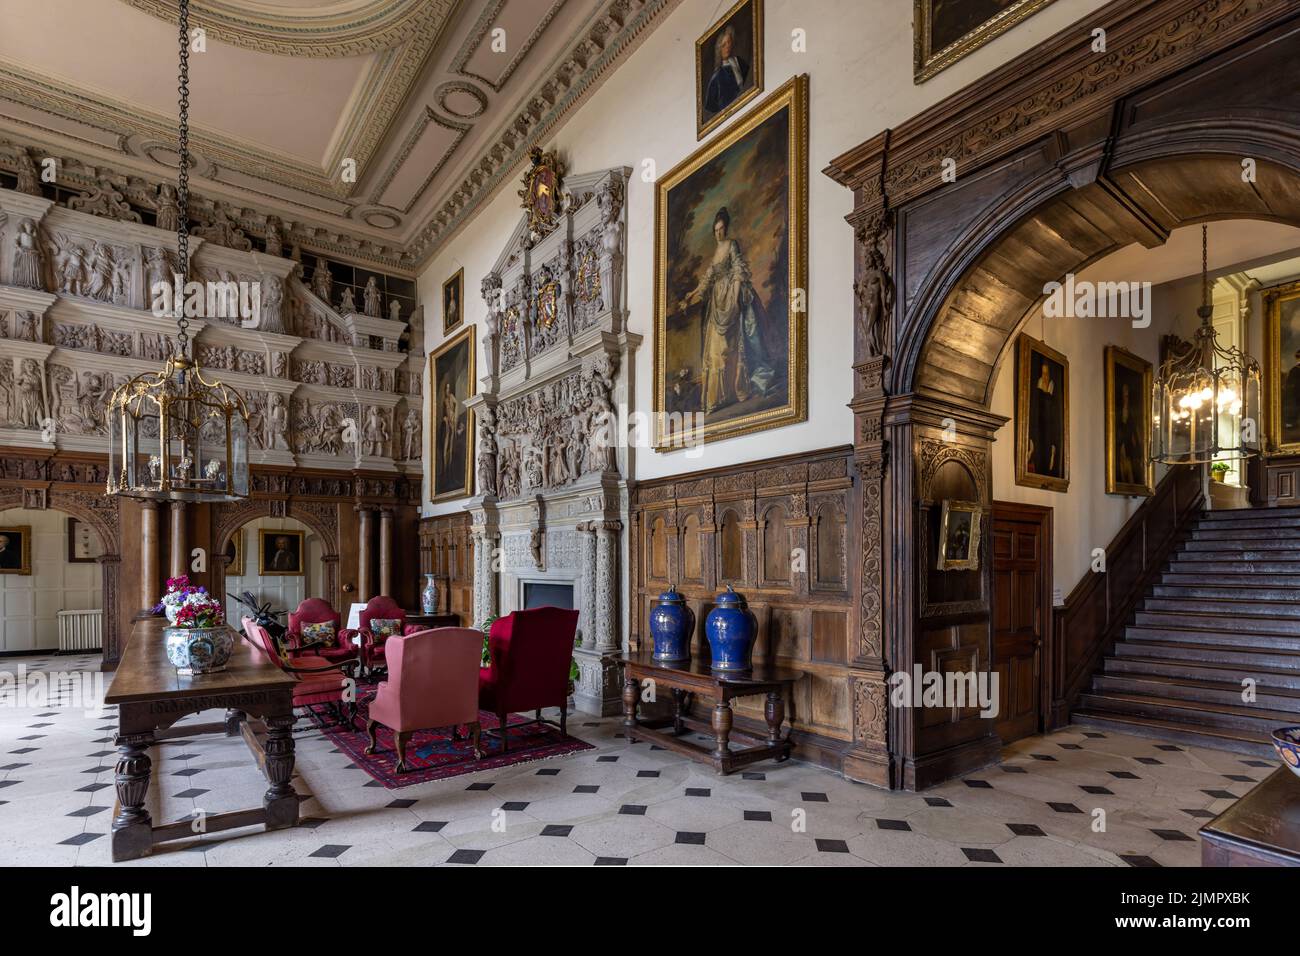 Grande salle à Burton Agnes Hall, superbe manoir élisabéthain du 17th siècle dans l'East Riding of Yorkshire, Angleterre, Royaume-Uni Banque D'Images